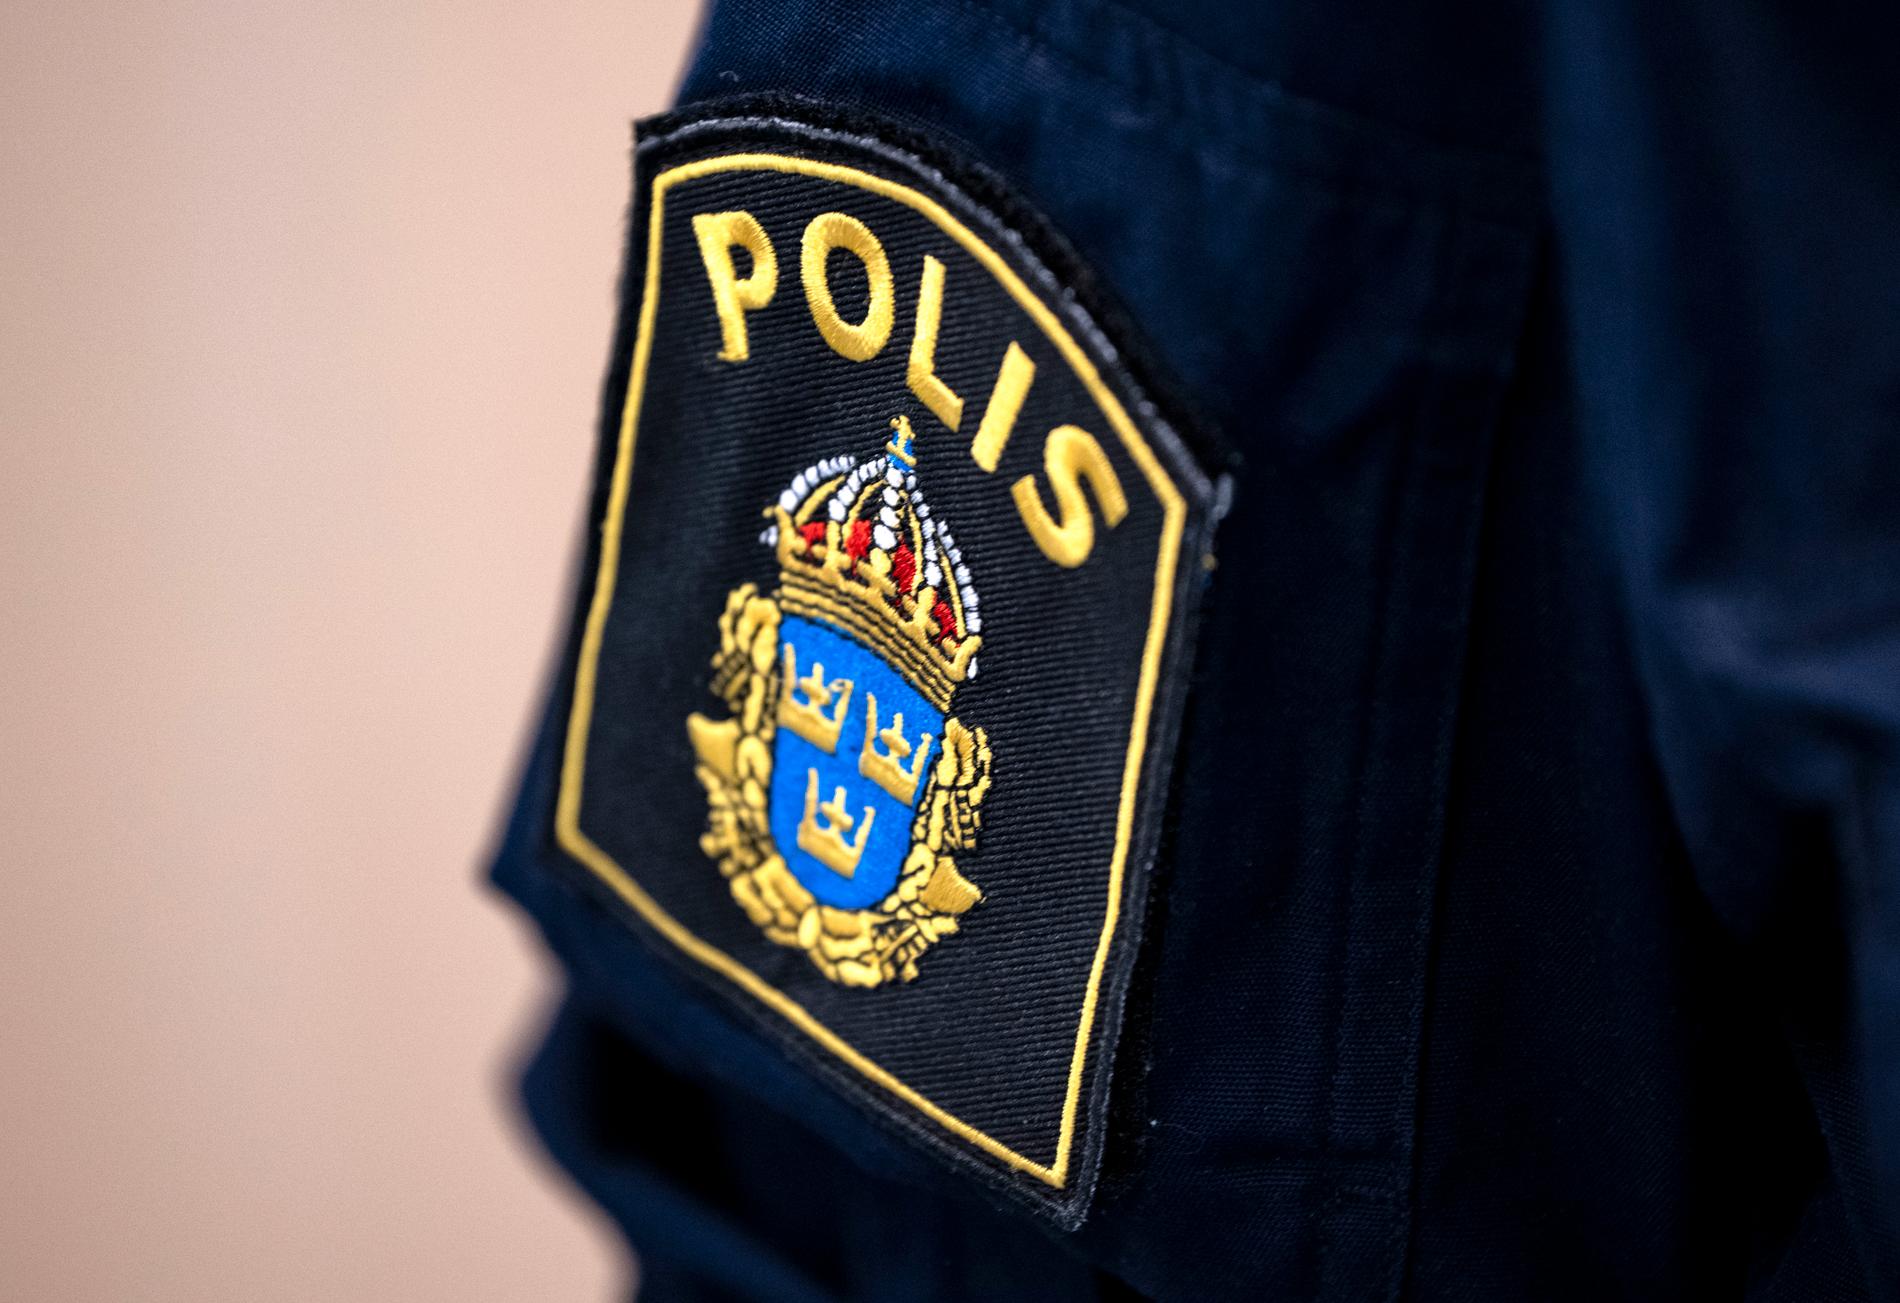 Polisen har gripit flera personer i Västsverige. Arkivbild.